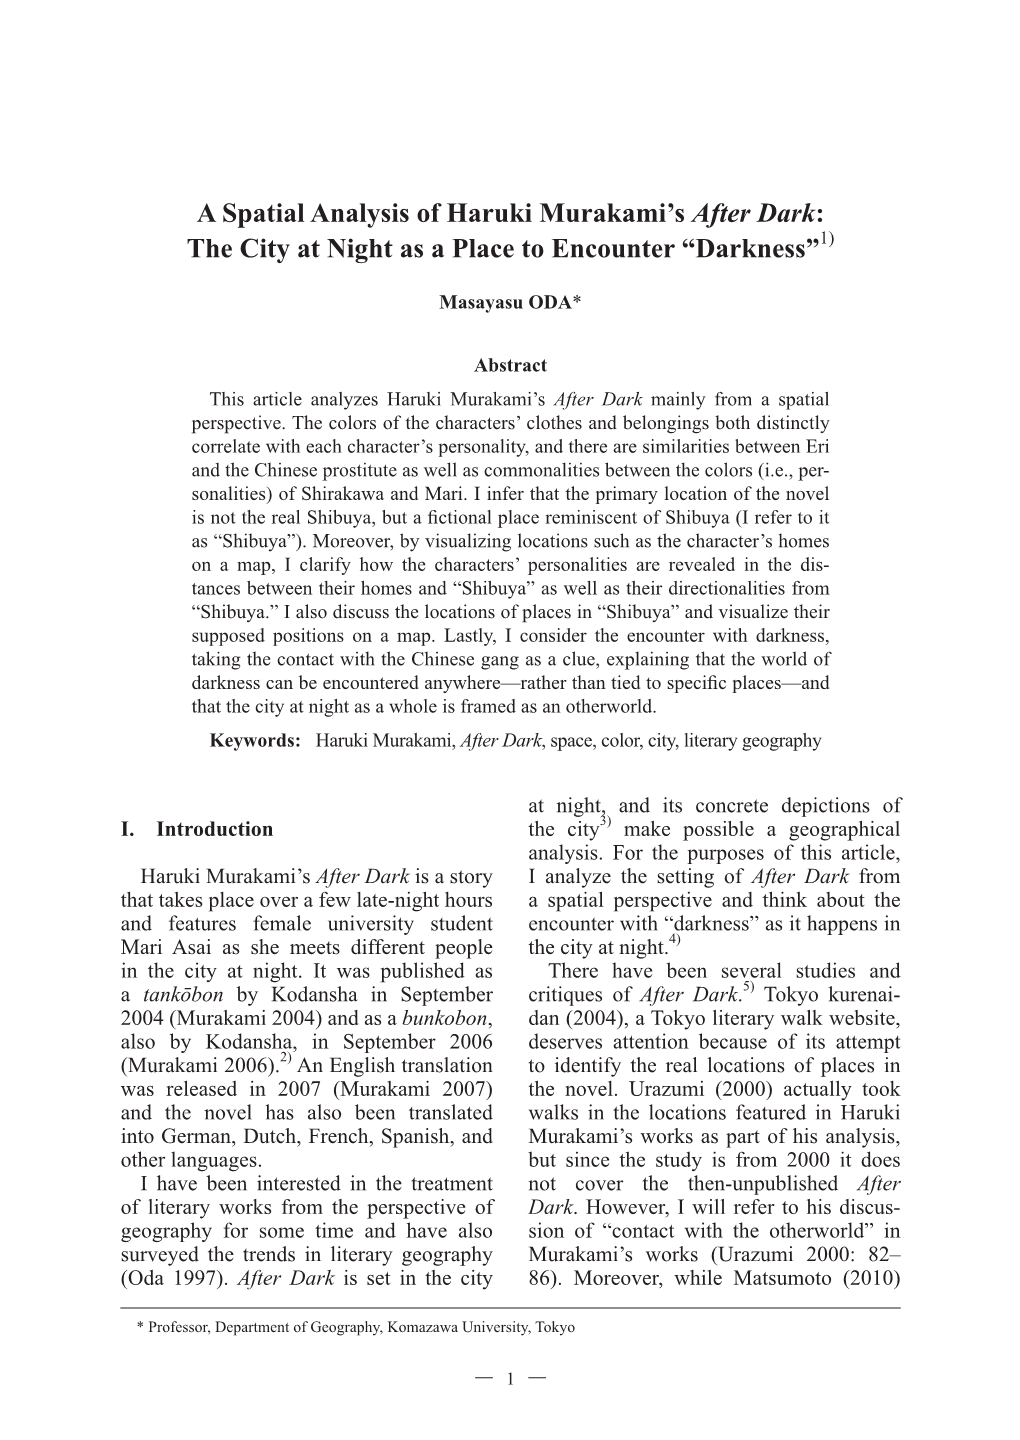 A Spatial Analysis of Haruki Murakami's After Dark: the City At